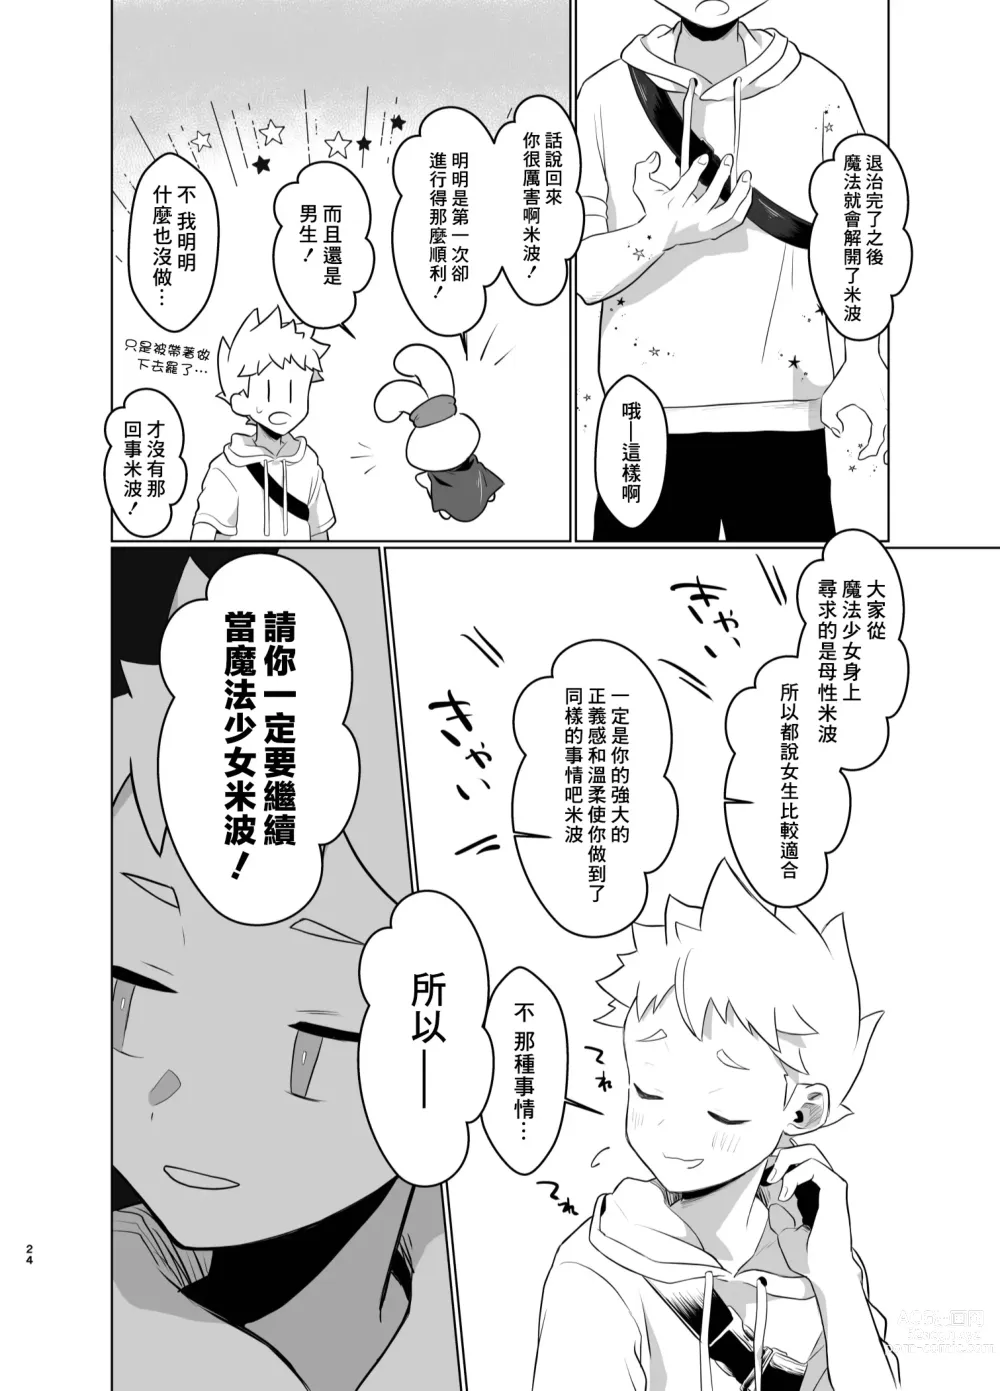 Page 23 of doujinshi Mahou Shoujo Mirakuru Mirachan丨魔法少女奇蹟米拉醬 (decensored)